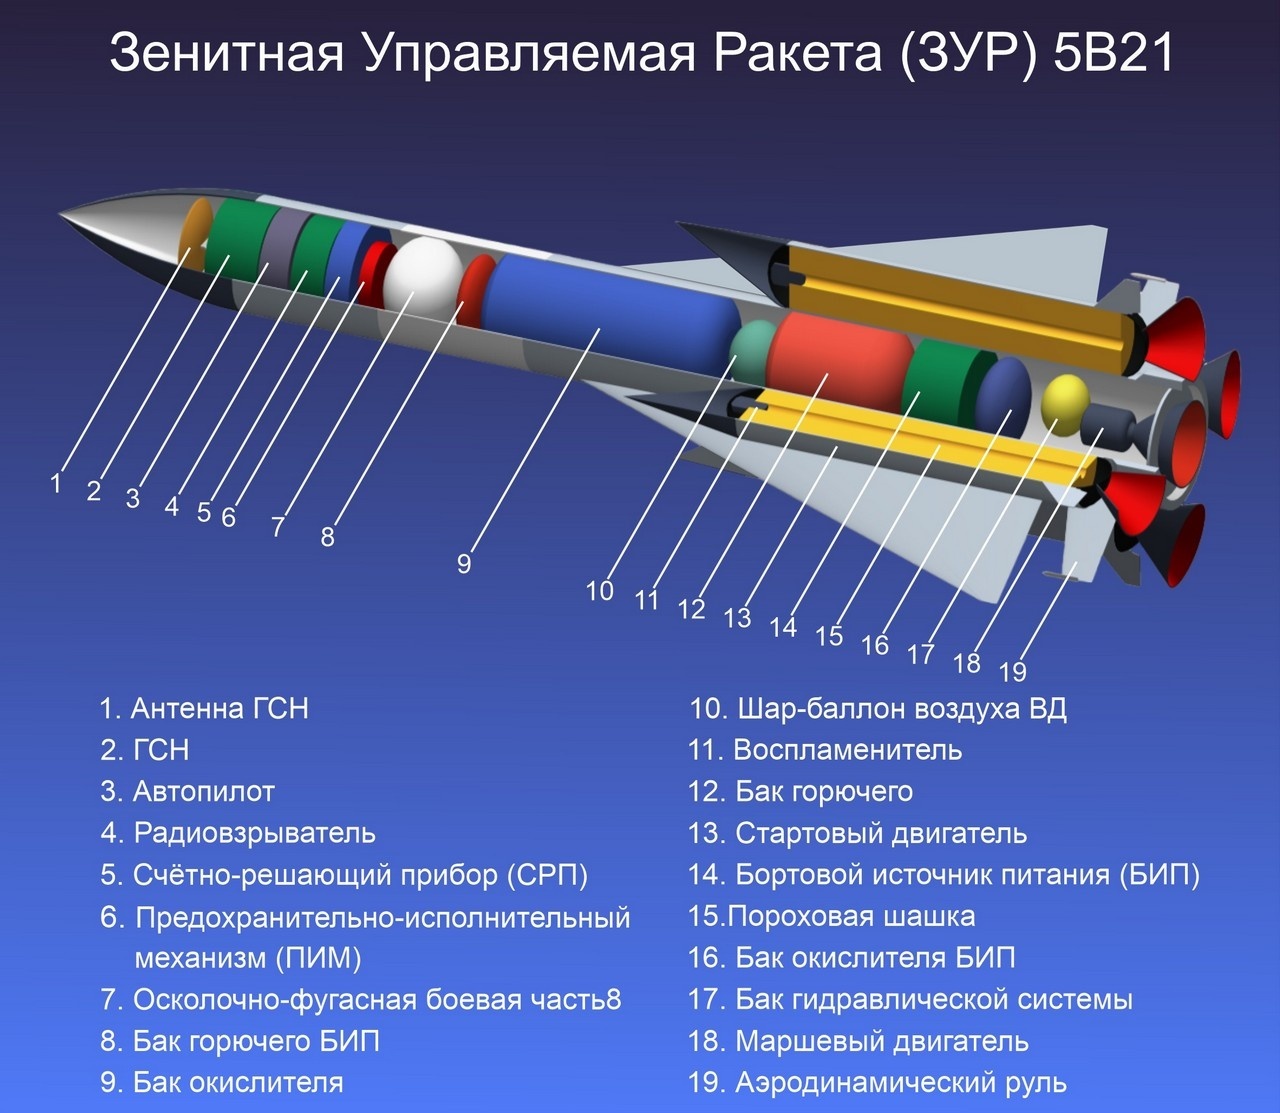 Зенитная управляемая ракета (ЗУР) 5В21.